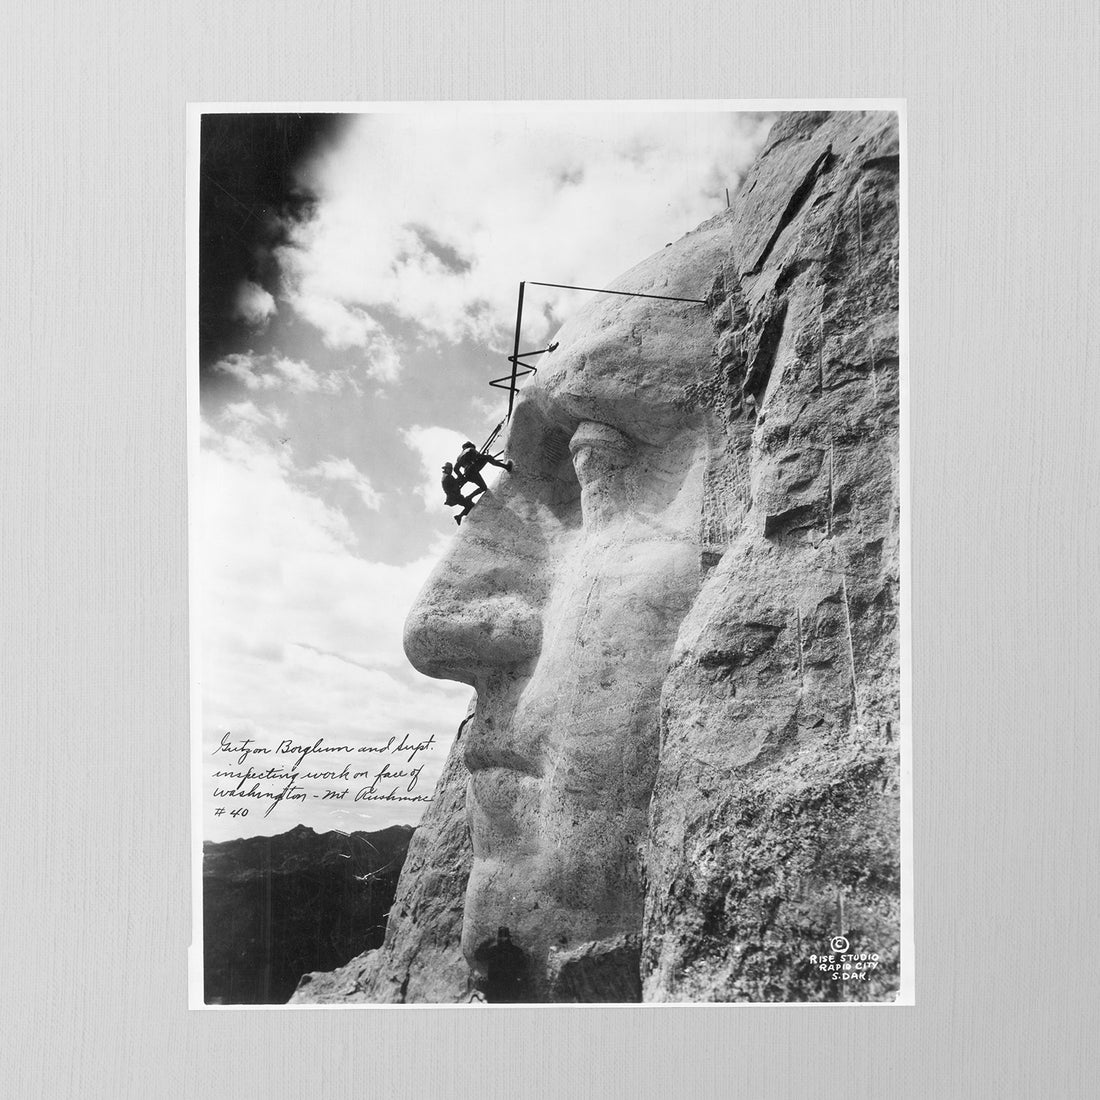 Mount Rushmore by Jordan J. Lloyd, 1932